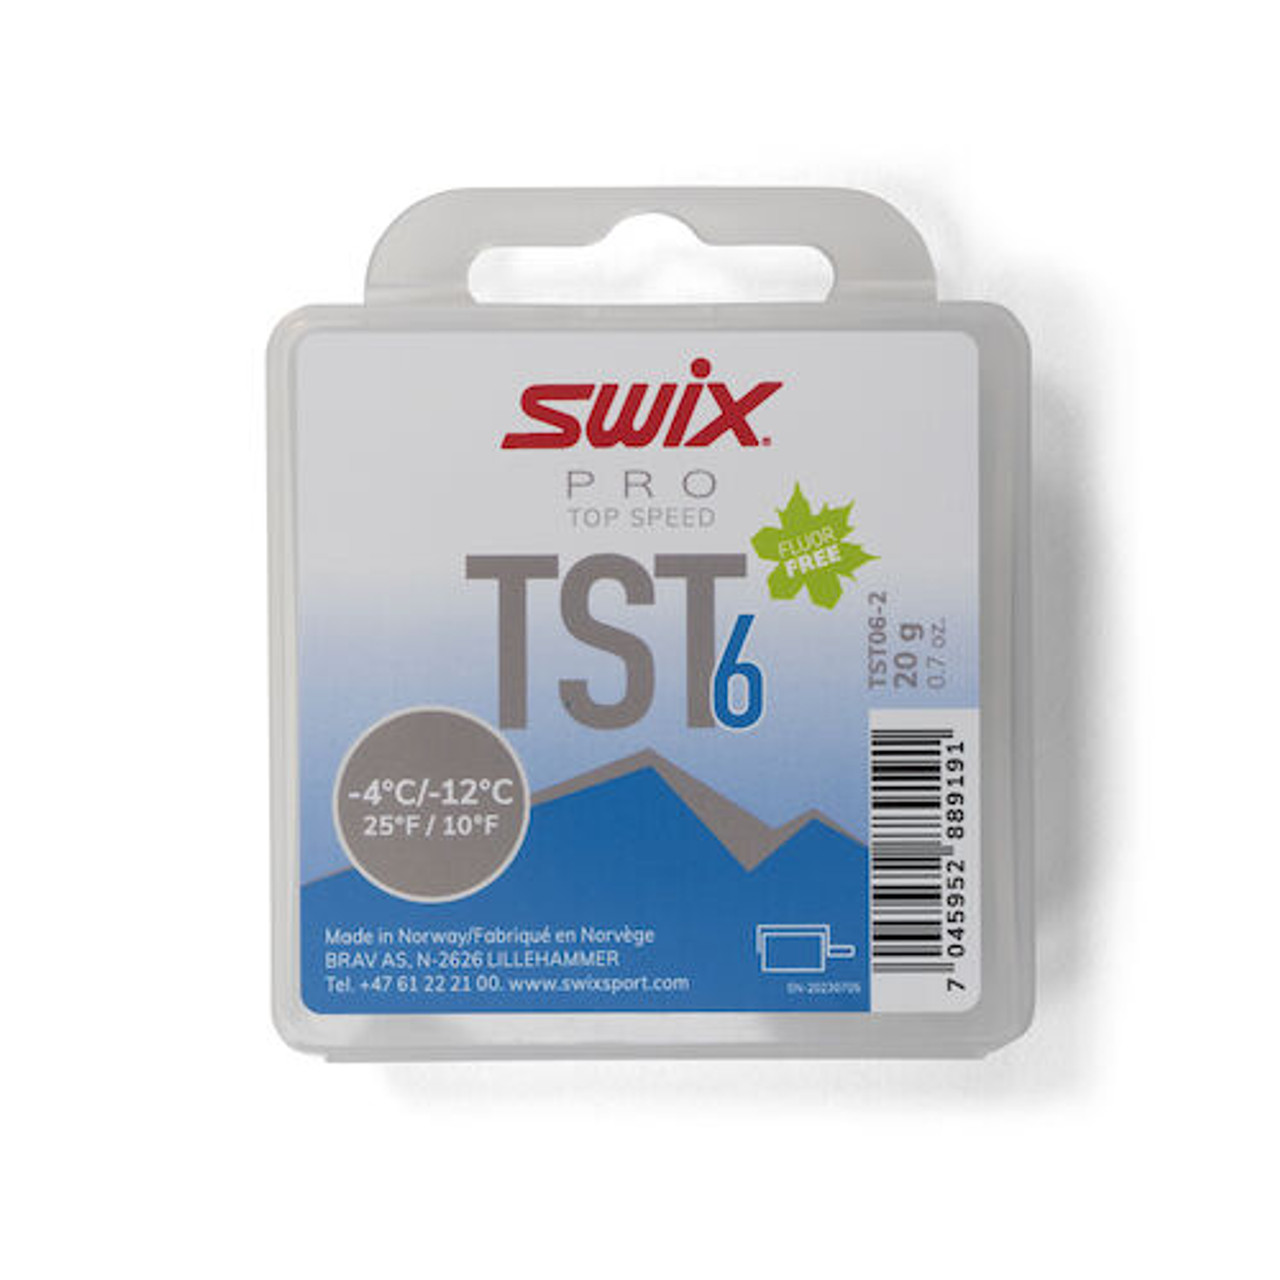 Swix Top Speed Turbo Wax (TST6)